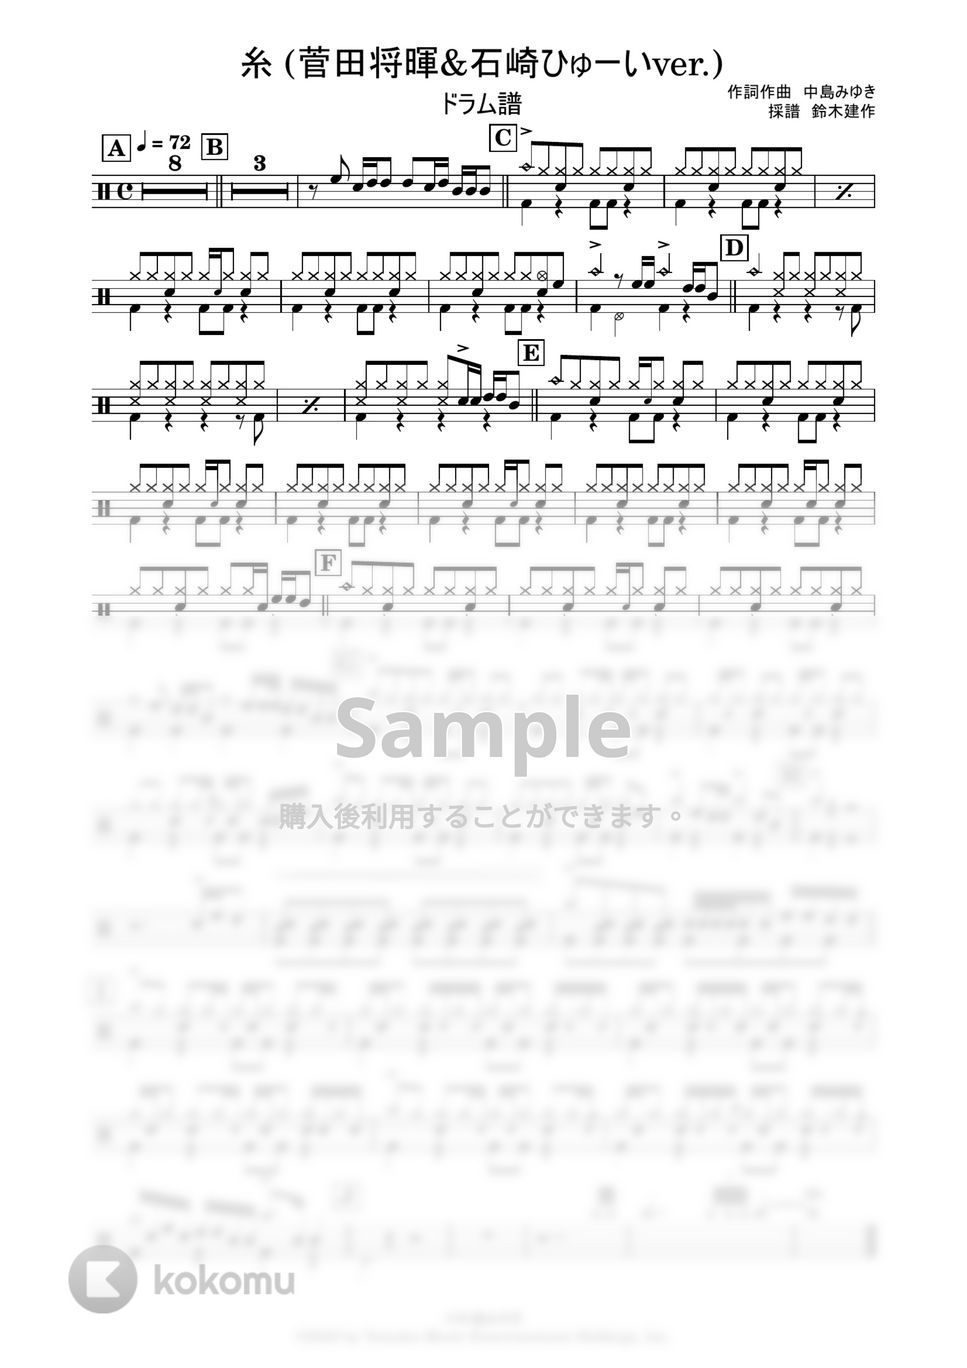 中島みゆき - 糸 (菅田将暉&石崎ひゅーいver) (ドラム譜) by 鈴木建作